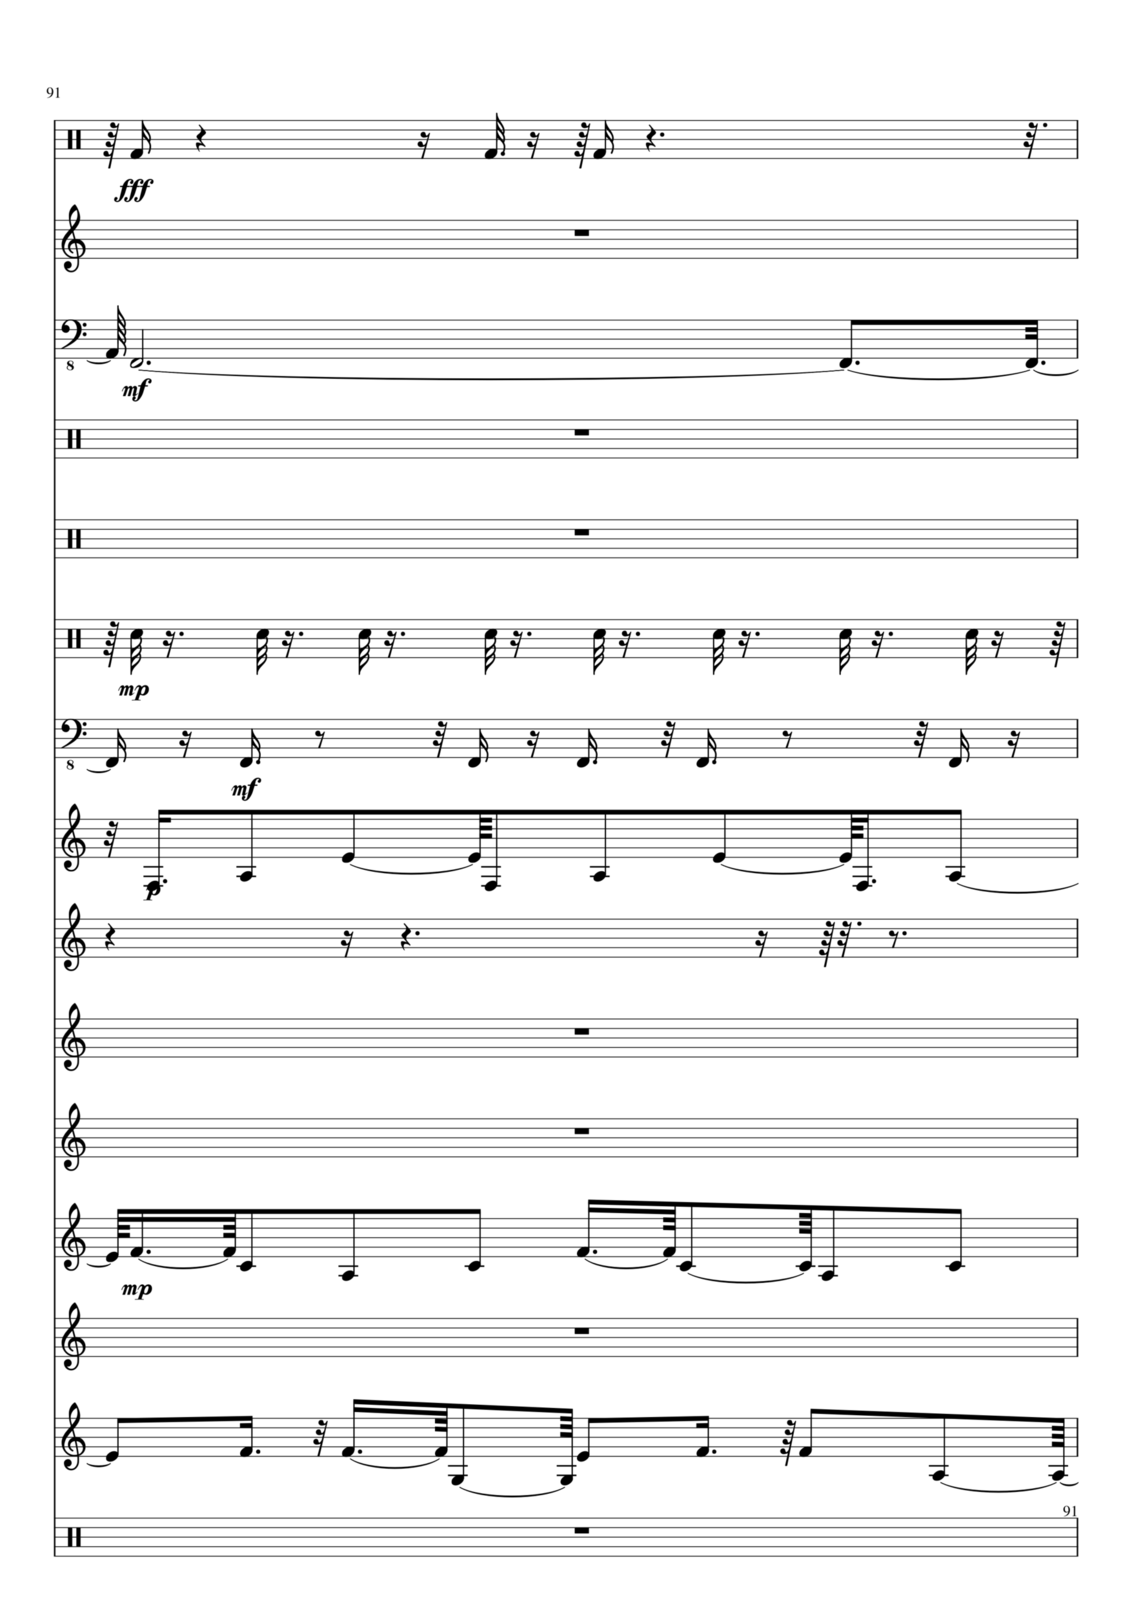 Utro polinyi slide, Image 91